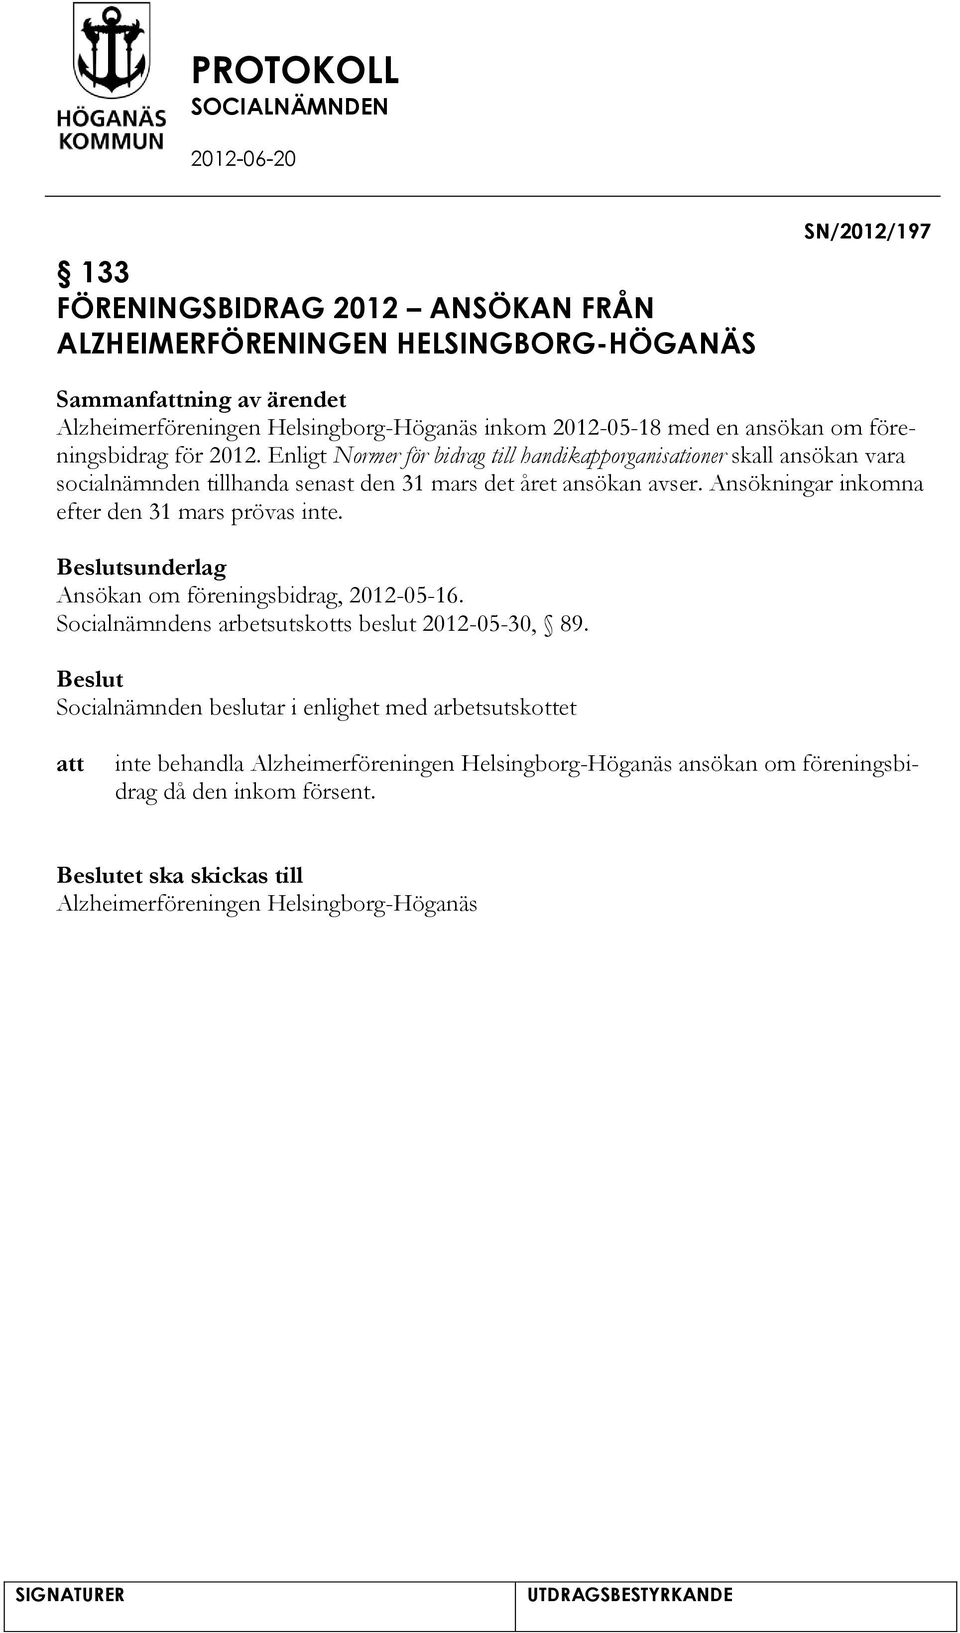 Ansökningar inkomna efter den 31 mars prövas inte. sunderlag Ansökan om föreningsbidrag, 2012-05-16. Socialnämndens arbetsutskotts beslut 2012-05-30, 89.